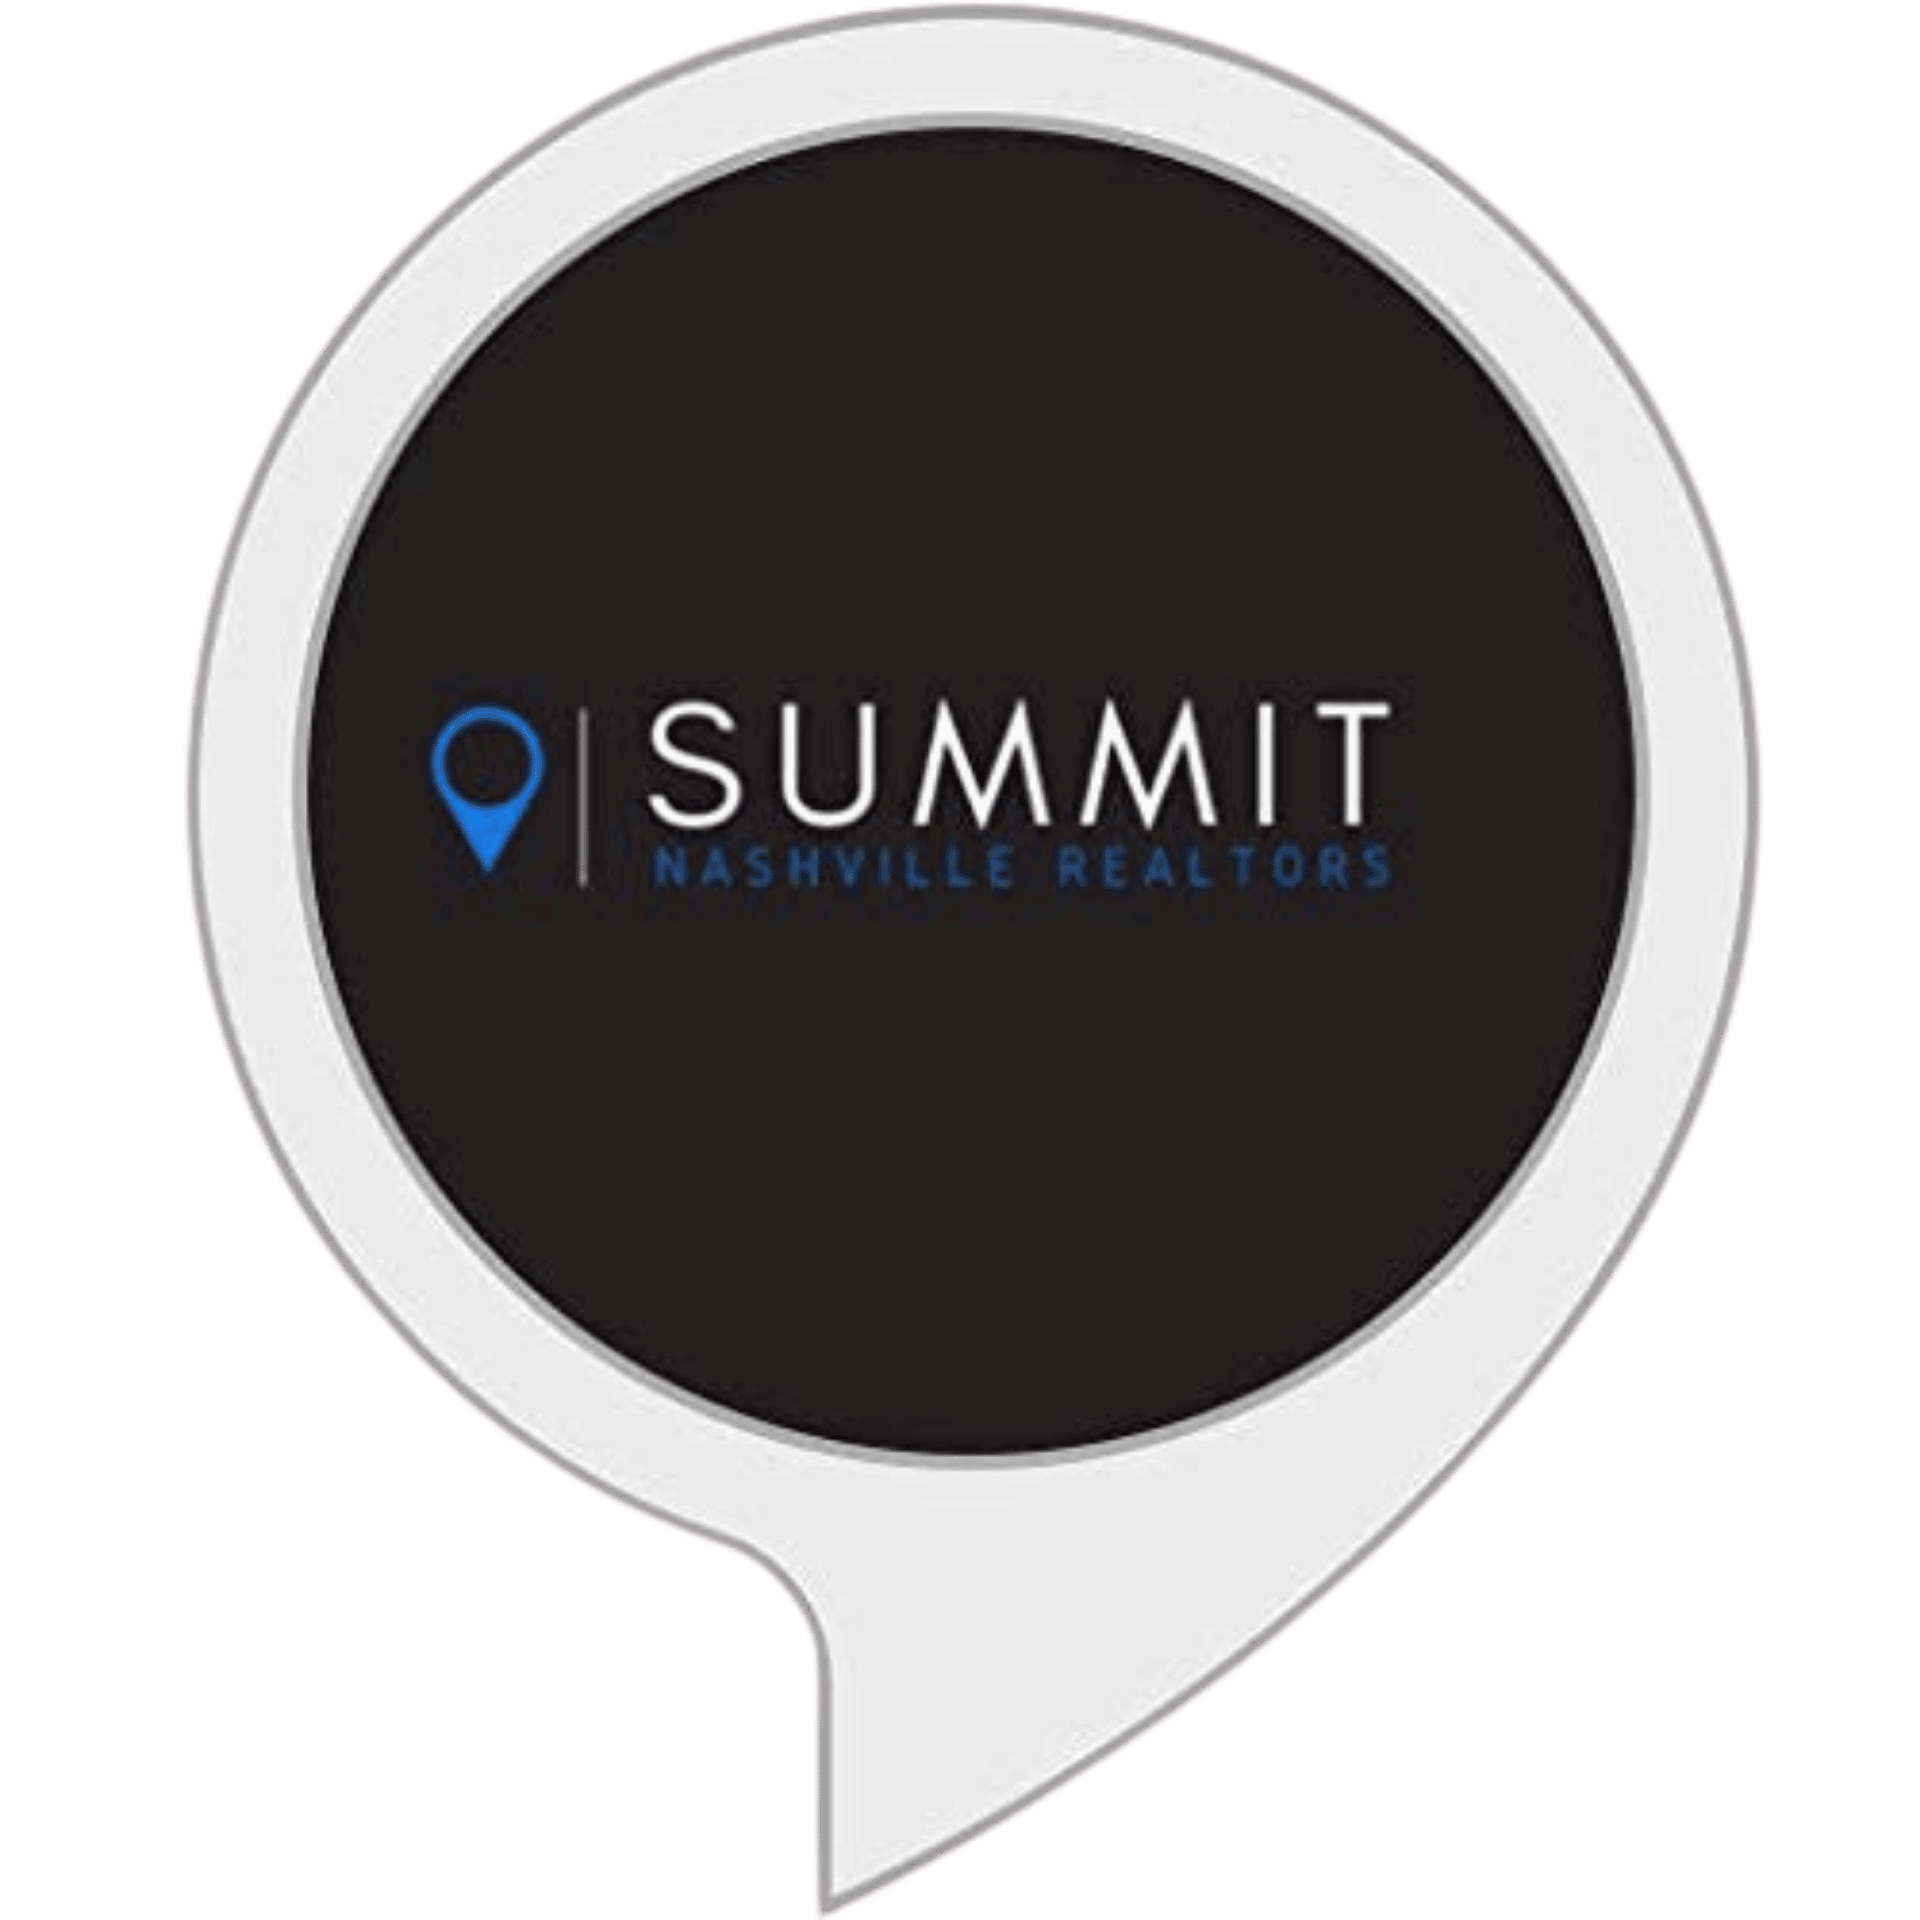 Summit Nashville Realtors Alexa Skill